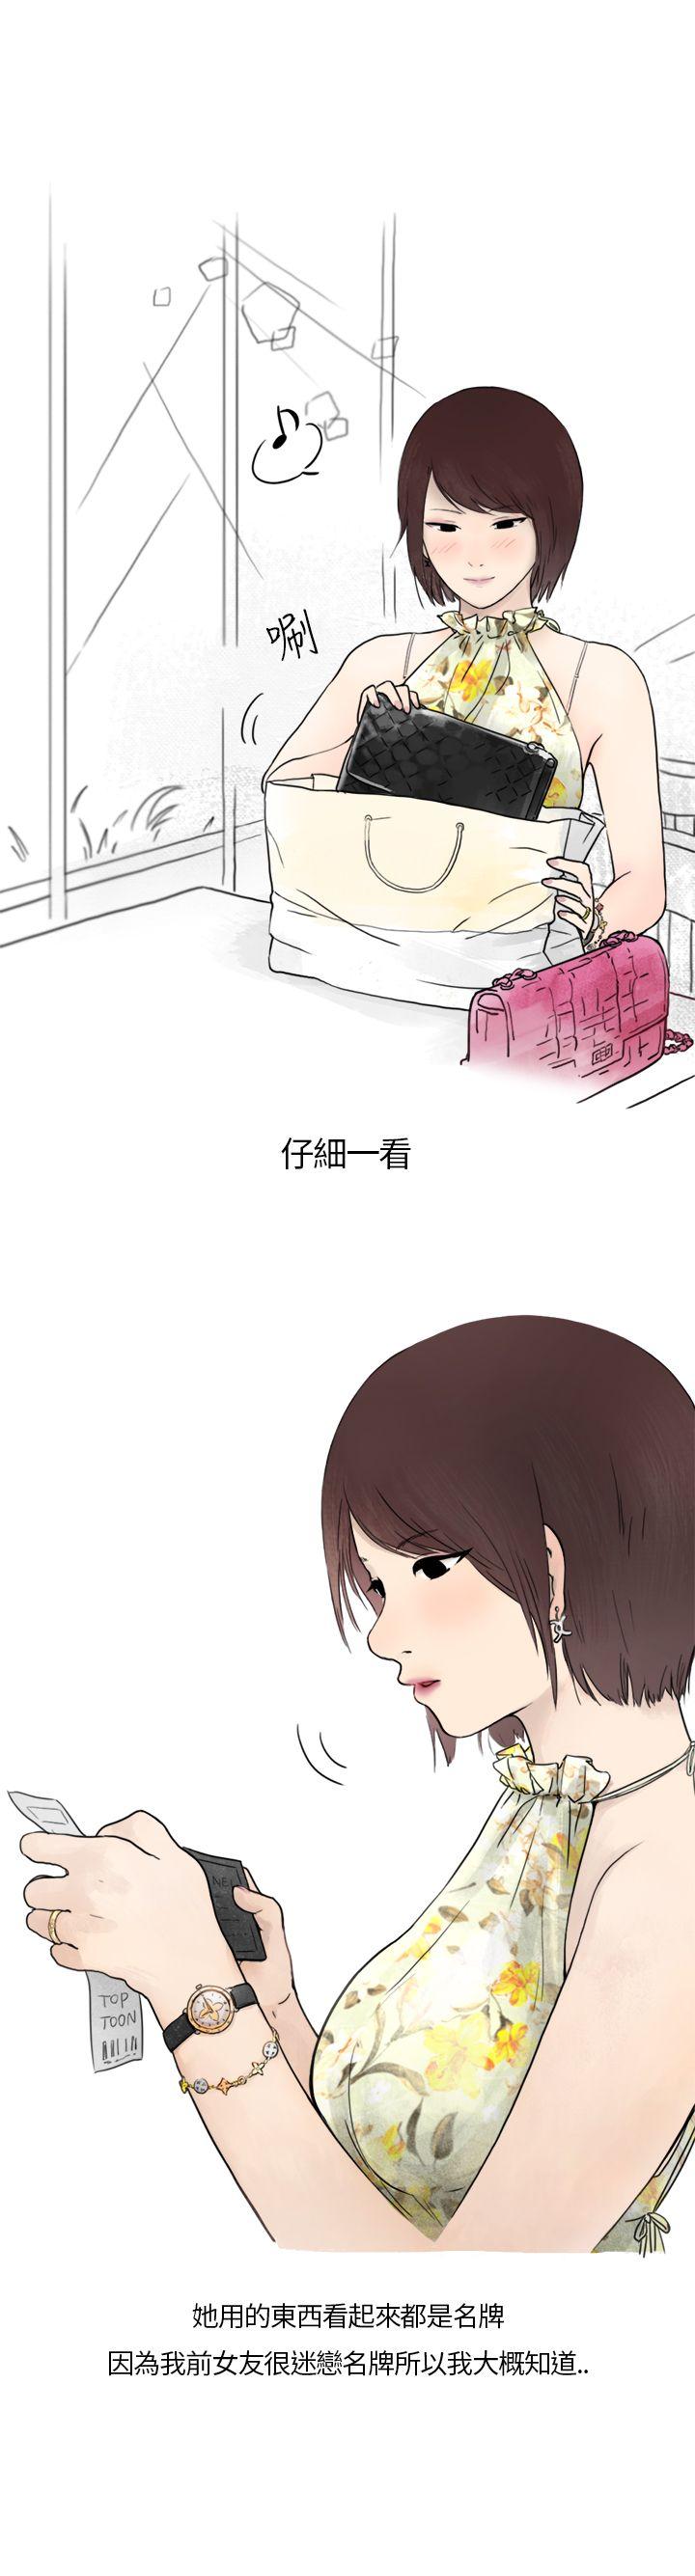 韩国污漫画 秘密Story第二季 在拍卖网站上认识的女人(上) 17